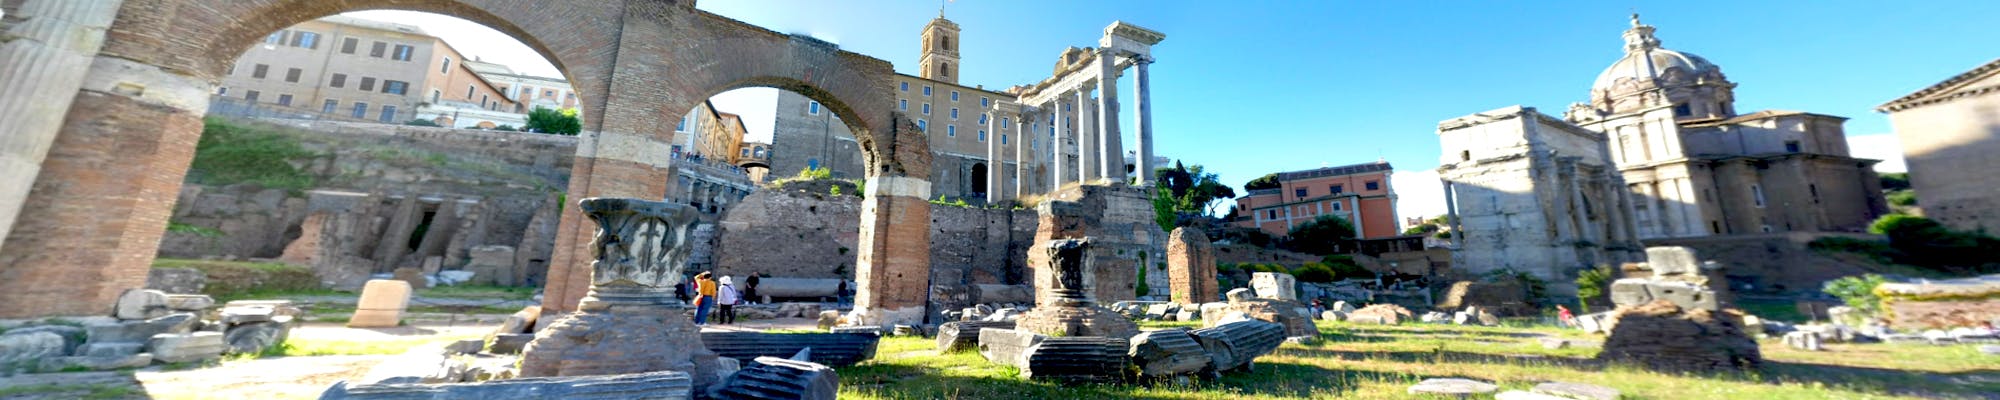 Visita virtual del Foro Romano desde casa